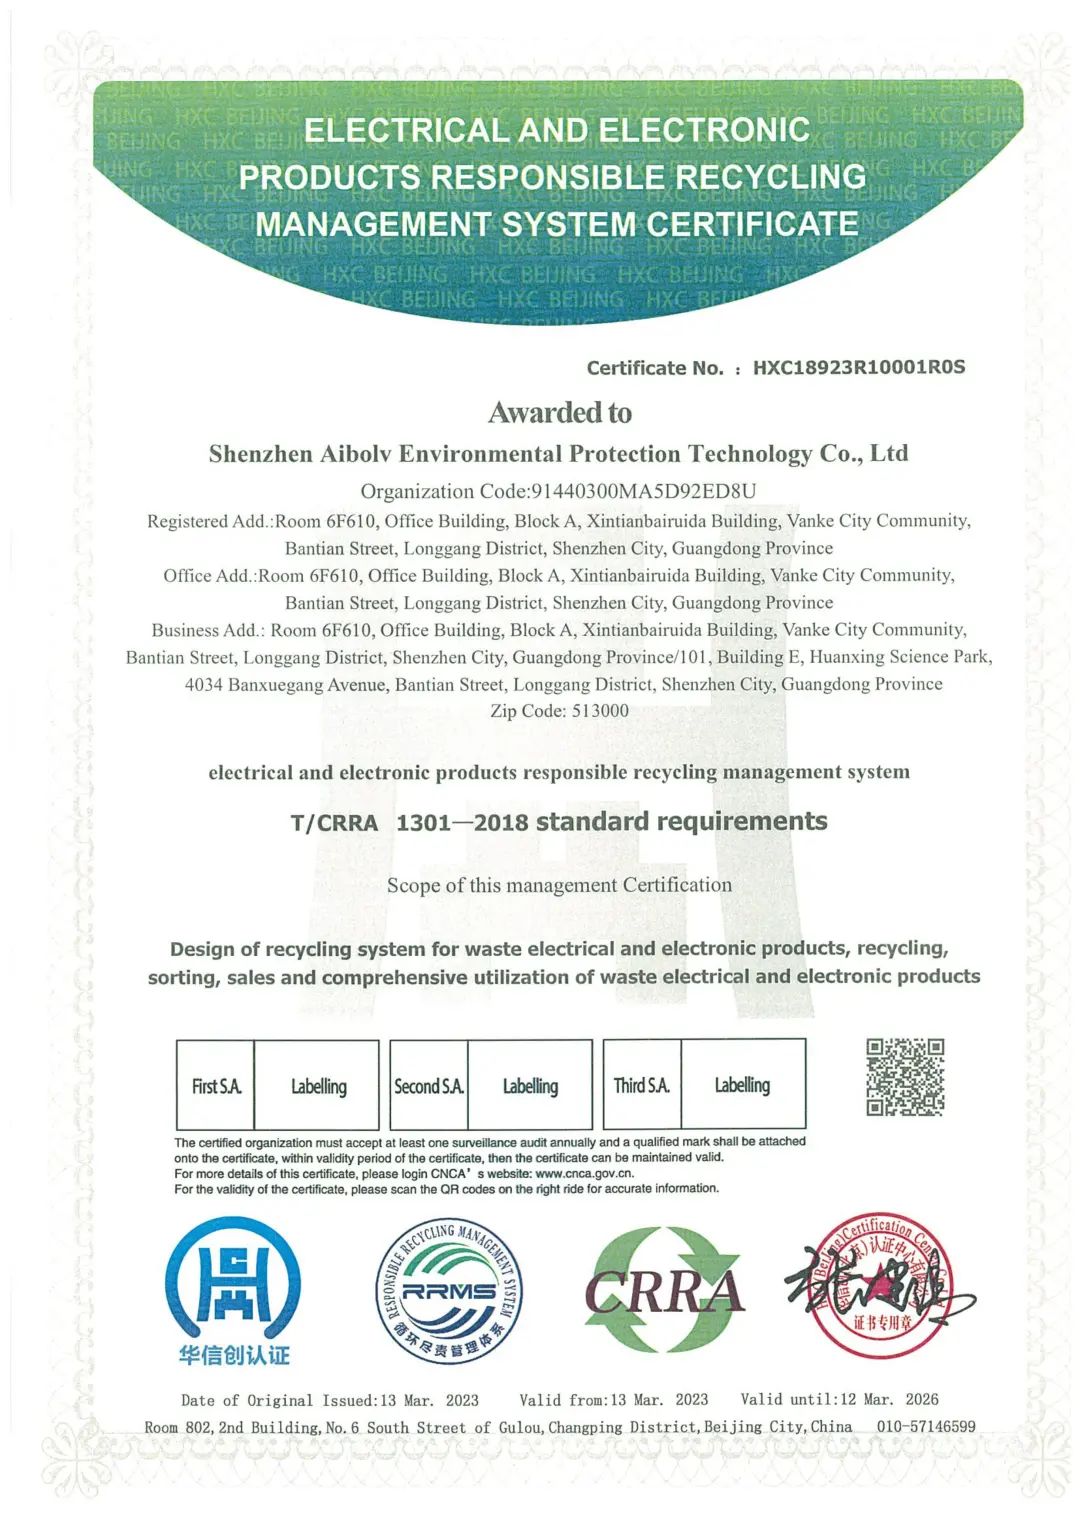 爱博绿通过电器电子产品尽责循环管理体系认证